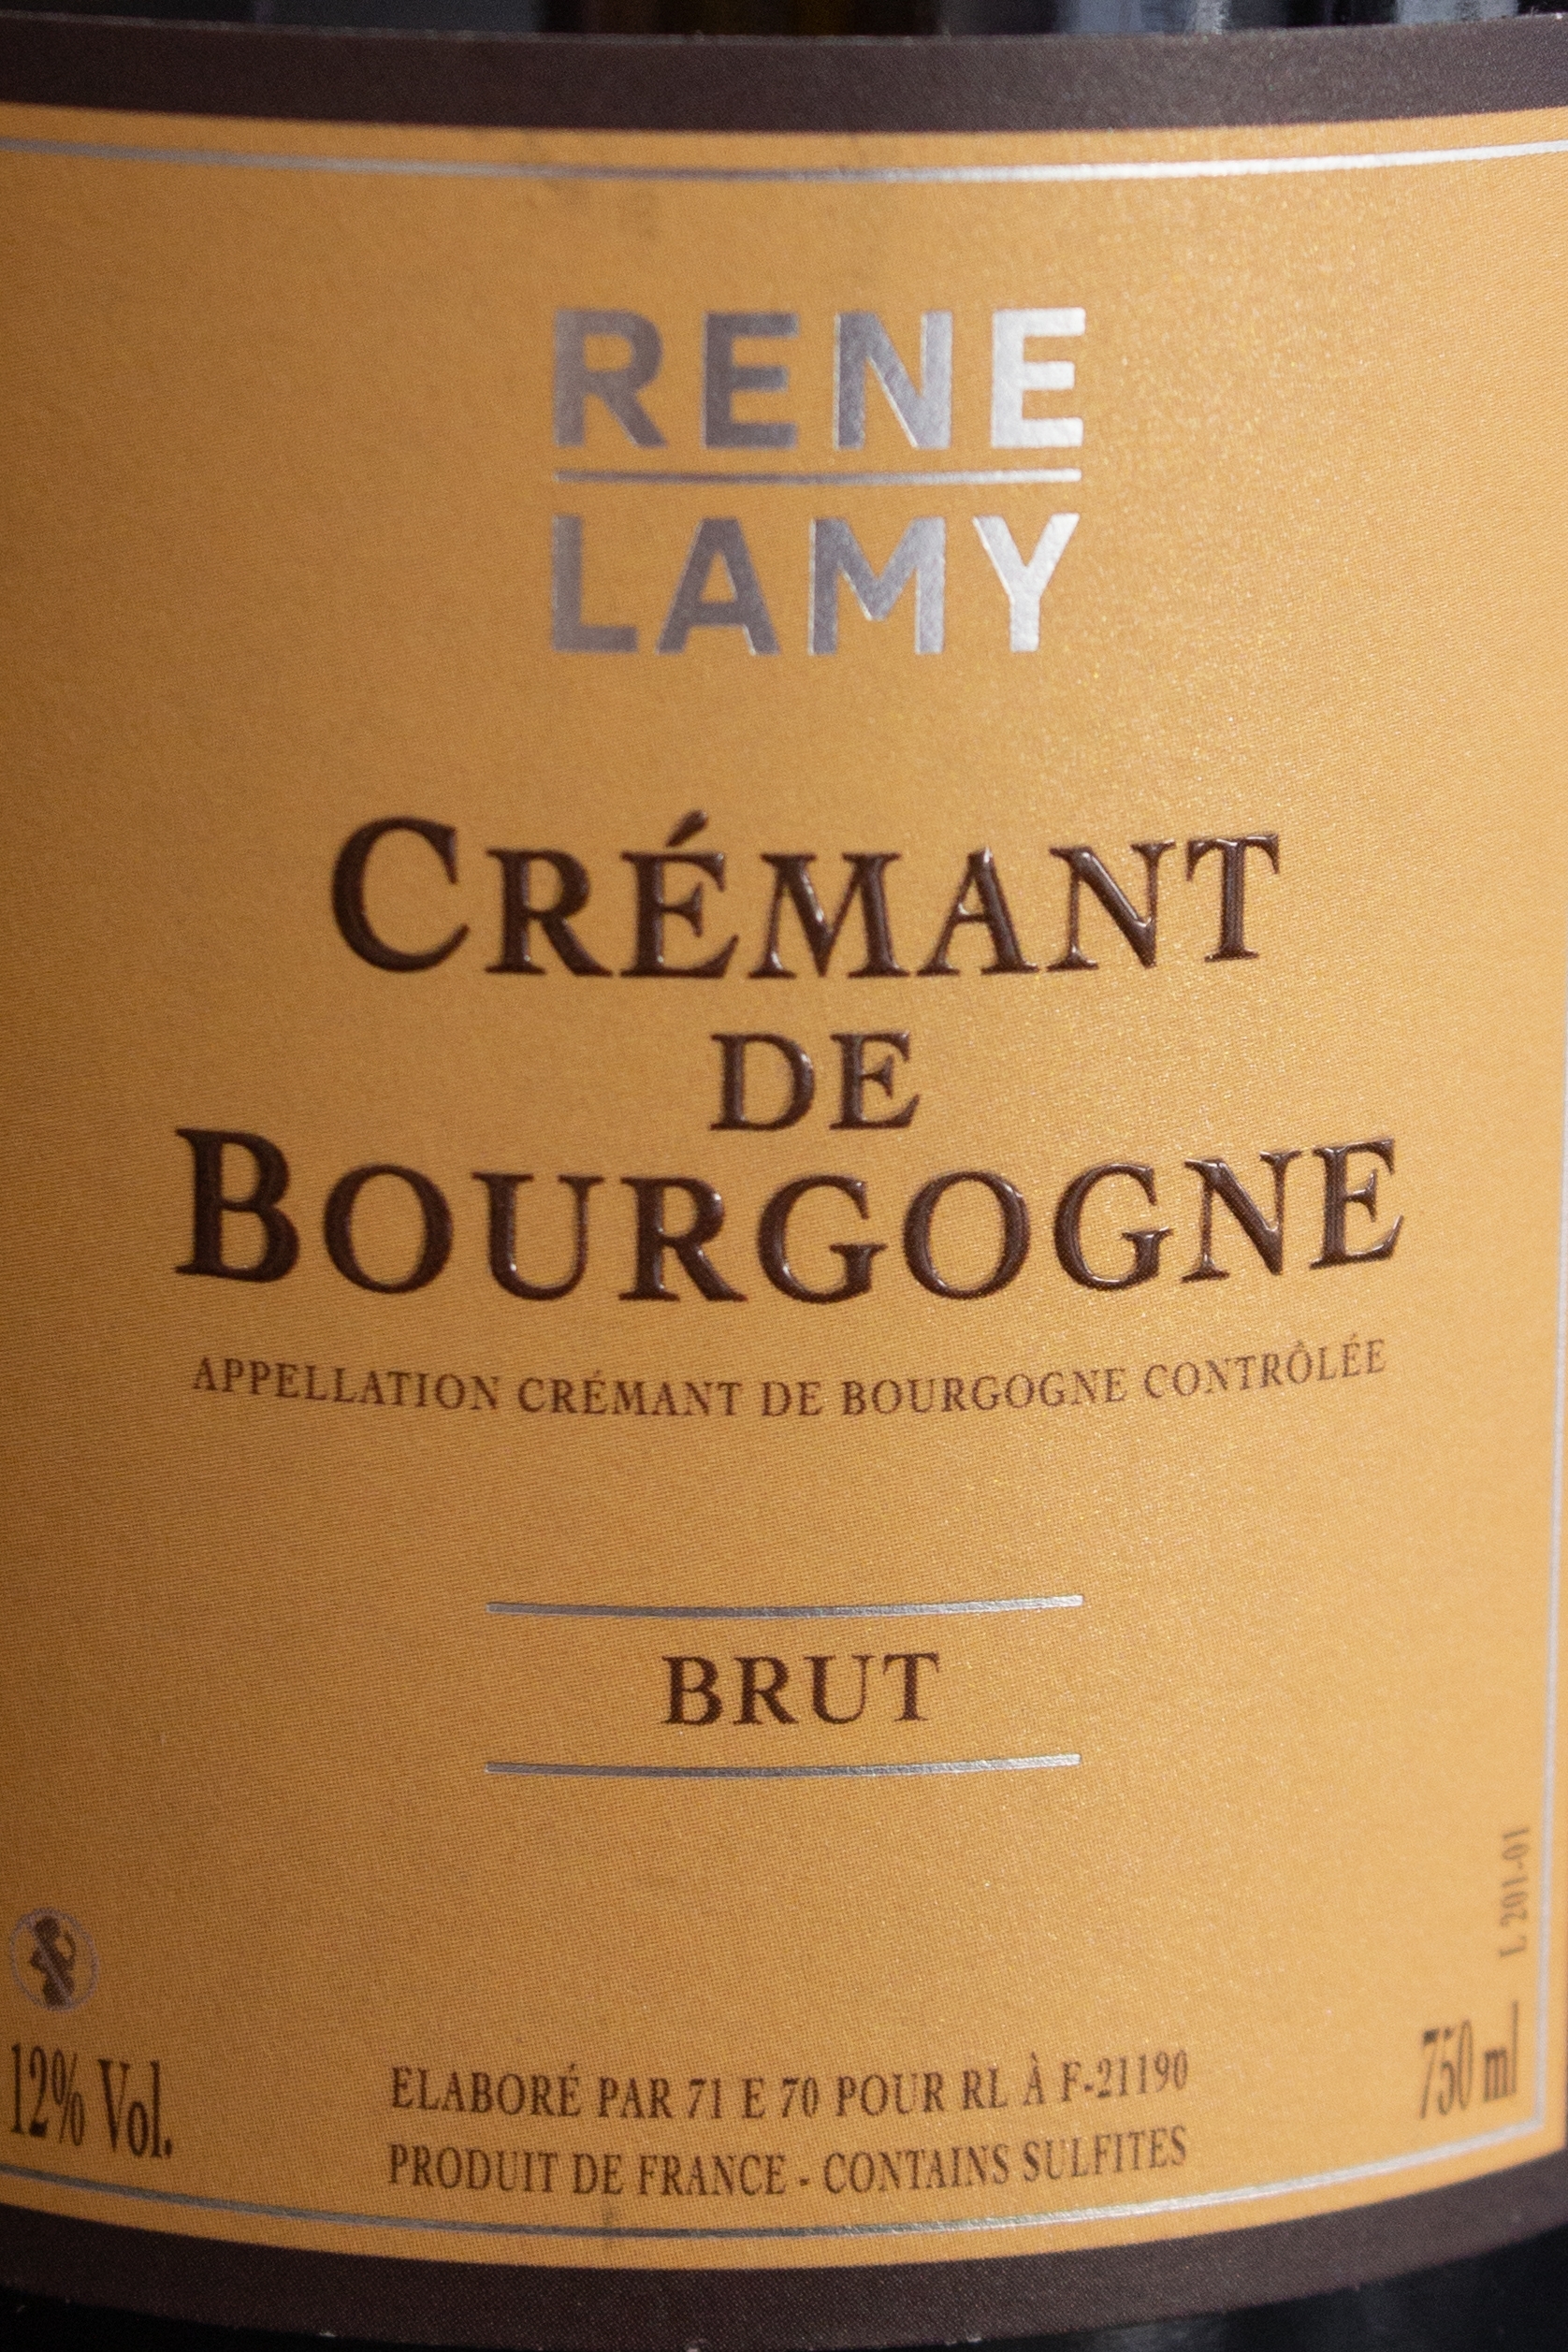 Игристое вино Rene Lamy Cremant de Bourgogne Brut / Рене Лами Креман де Бургонь Брют